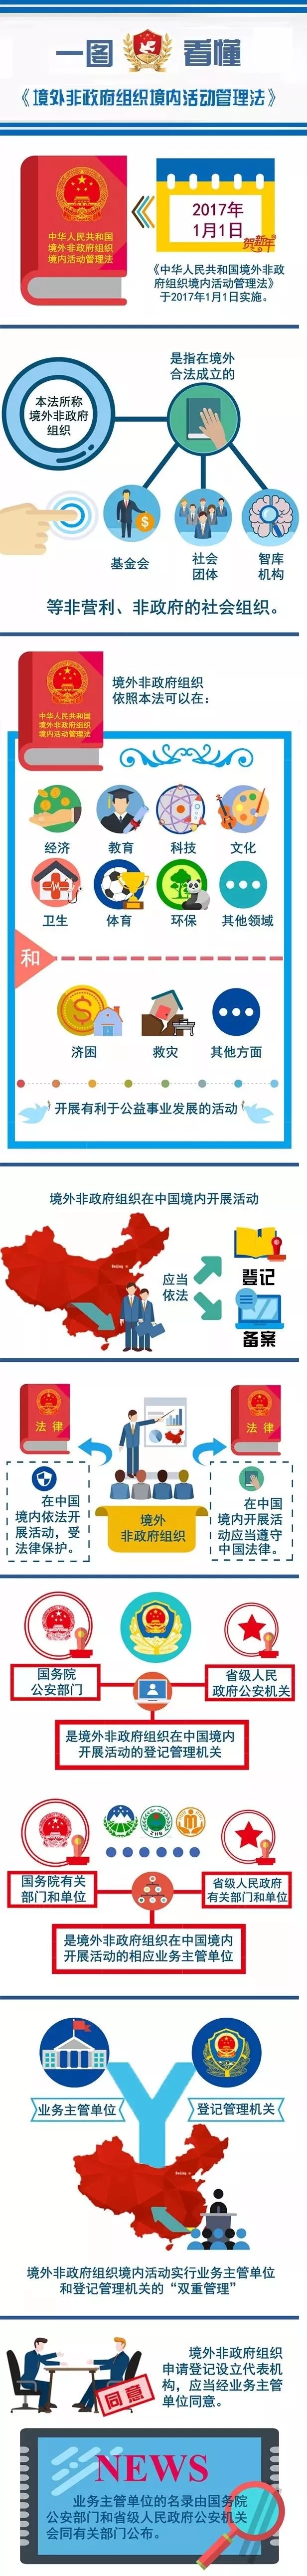 图片来自公安部公众号“境外非政府组织在中国”